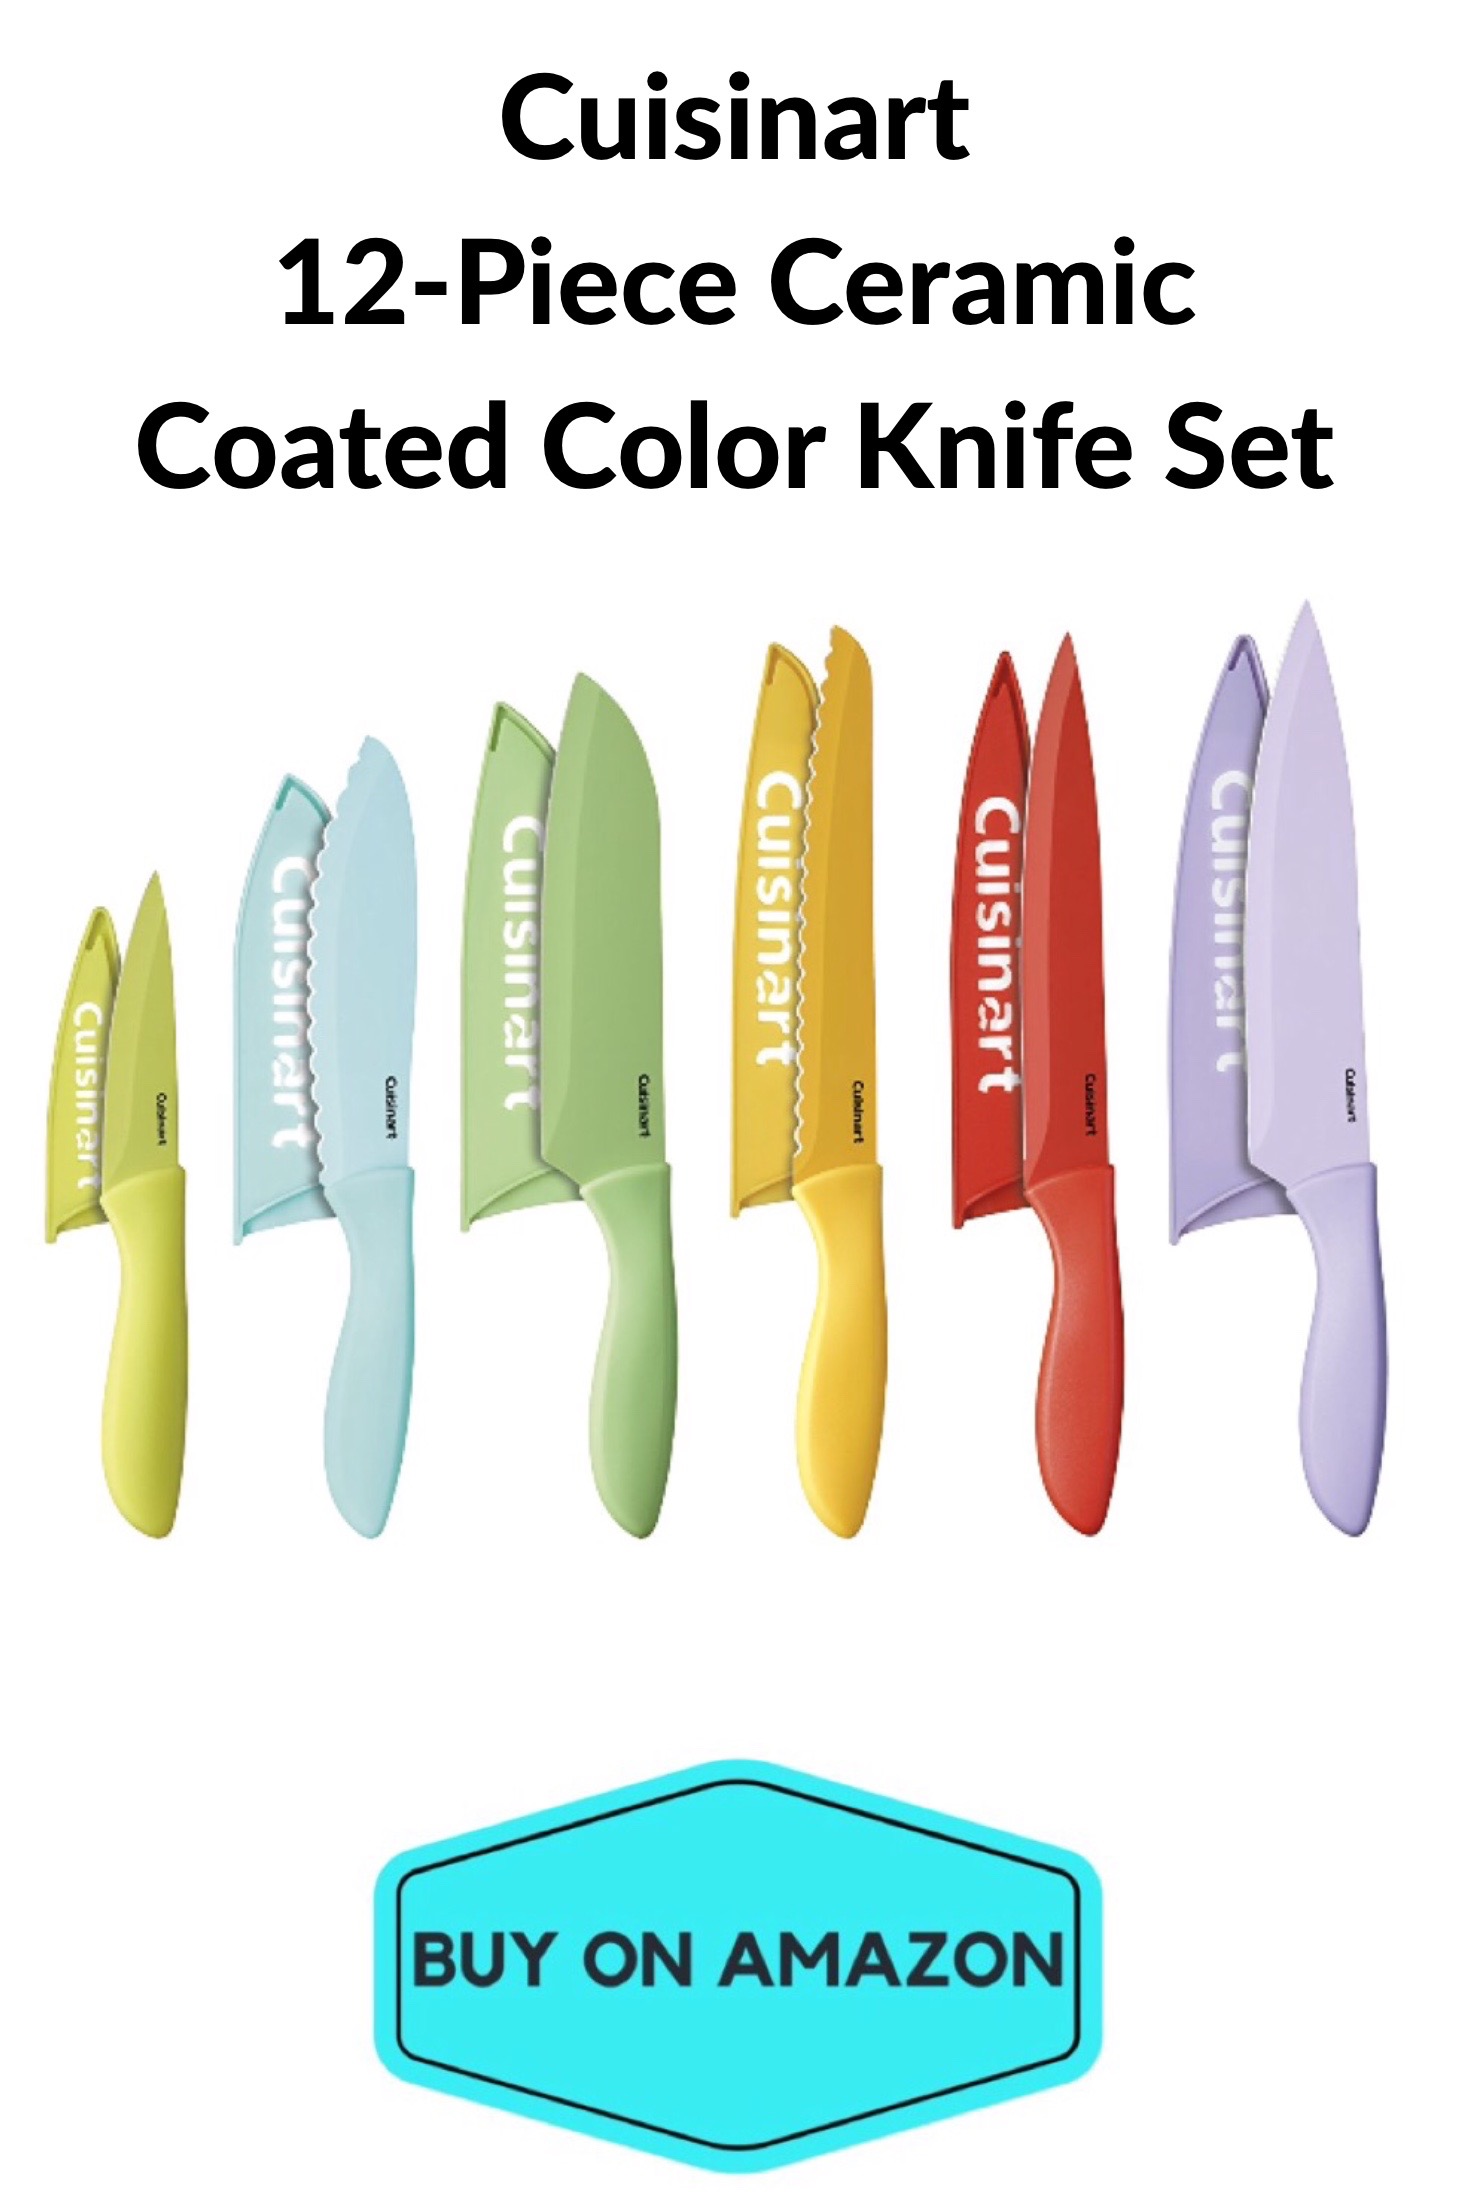 Cuisinart 12-Piece Ceramic Coated Color Knife Set